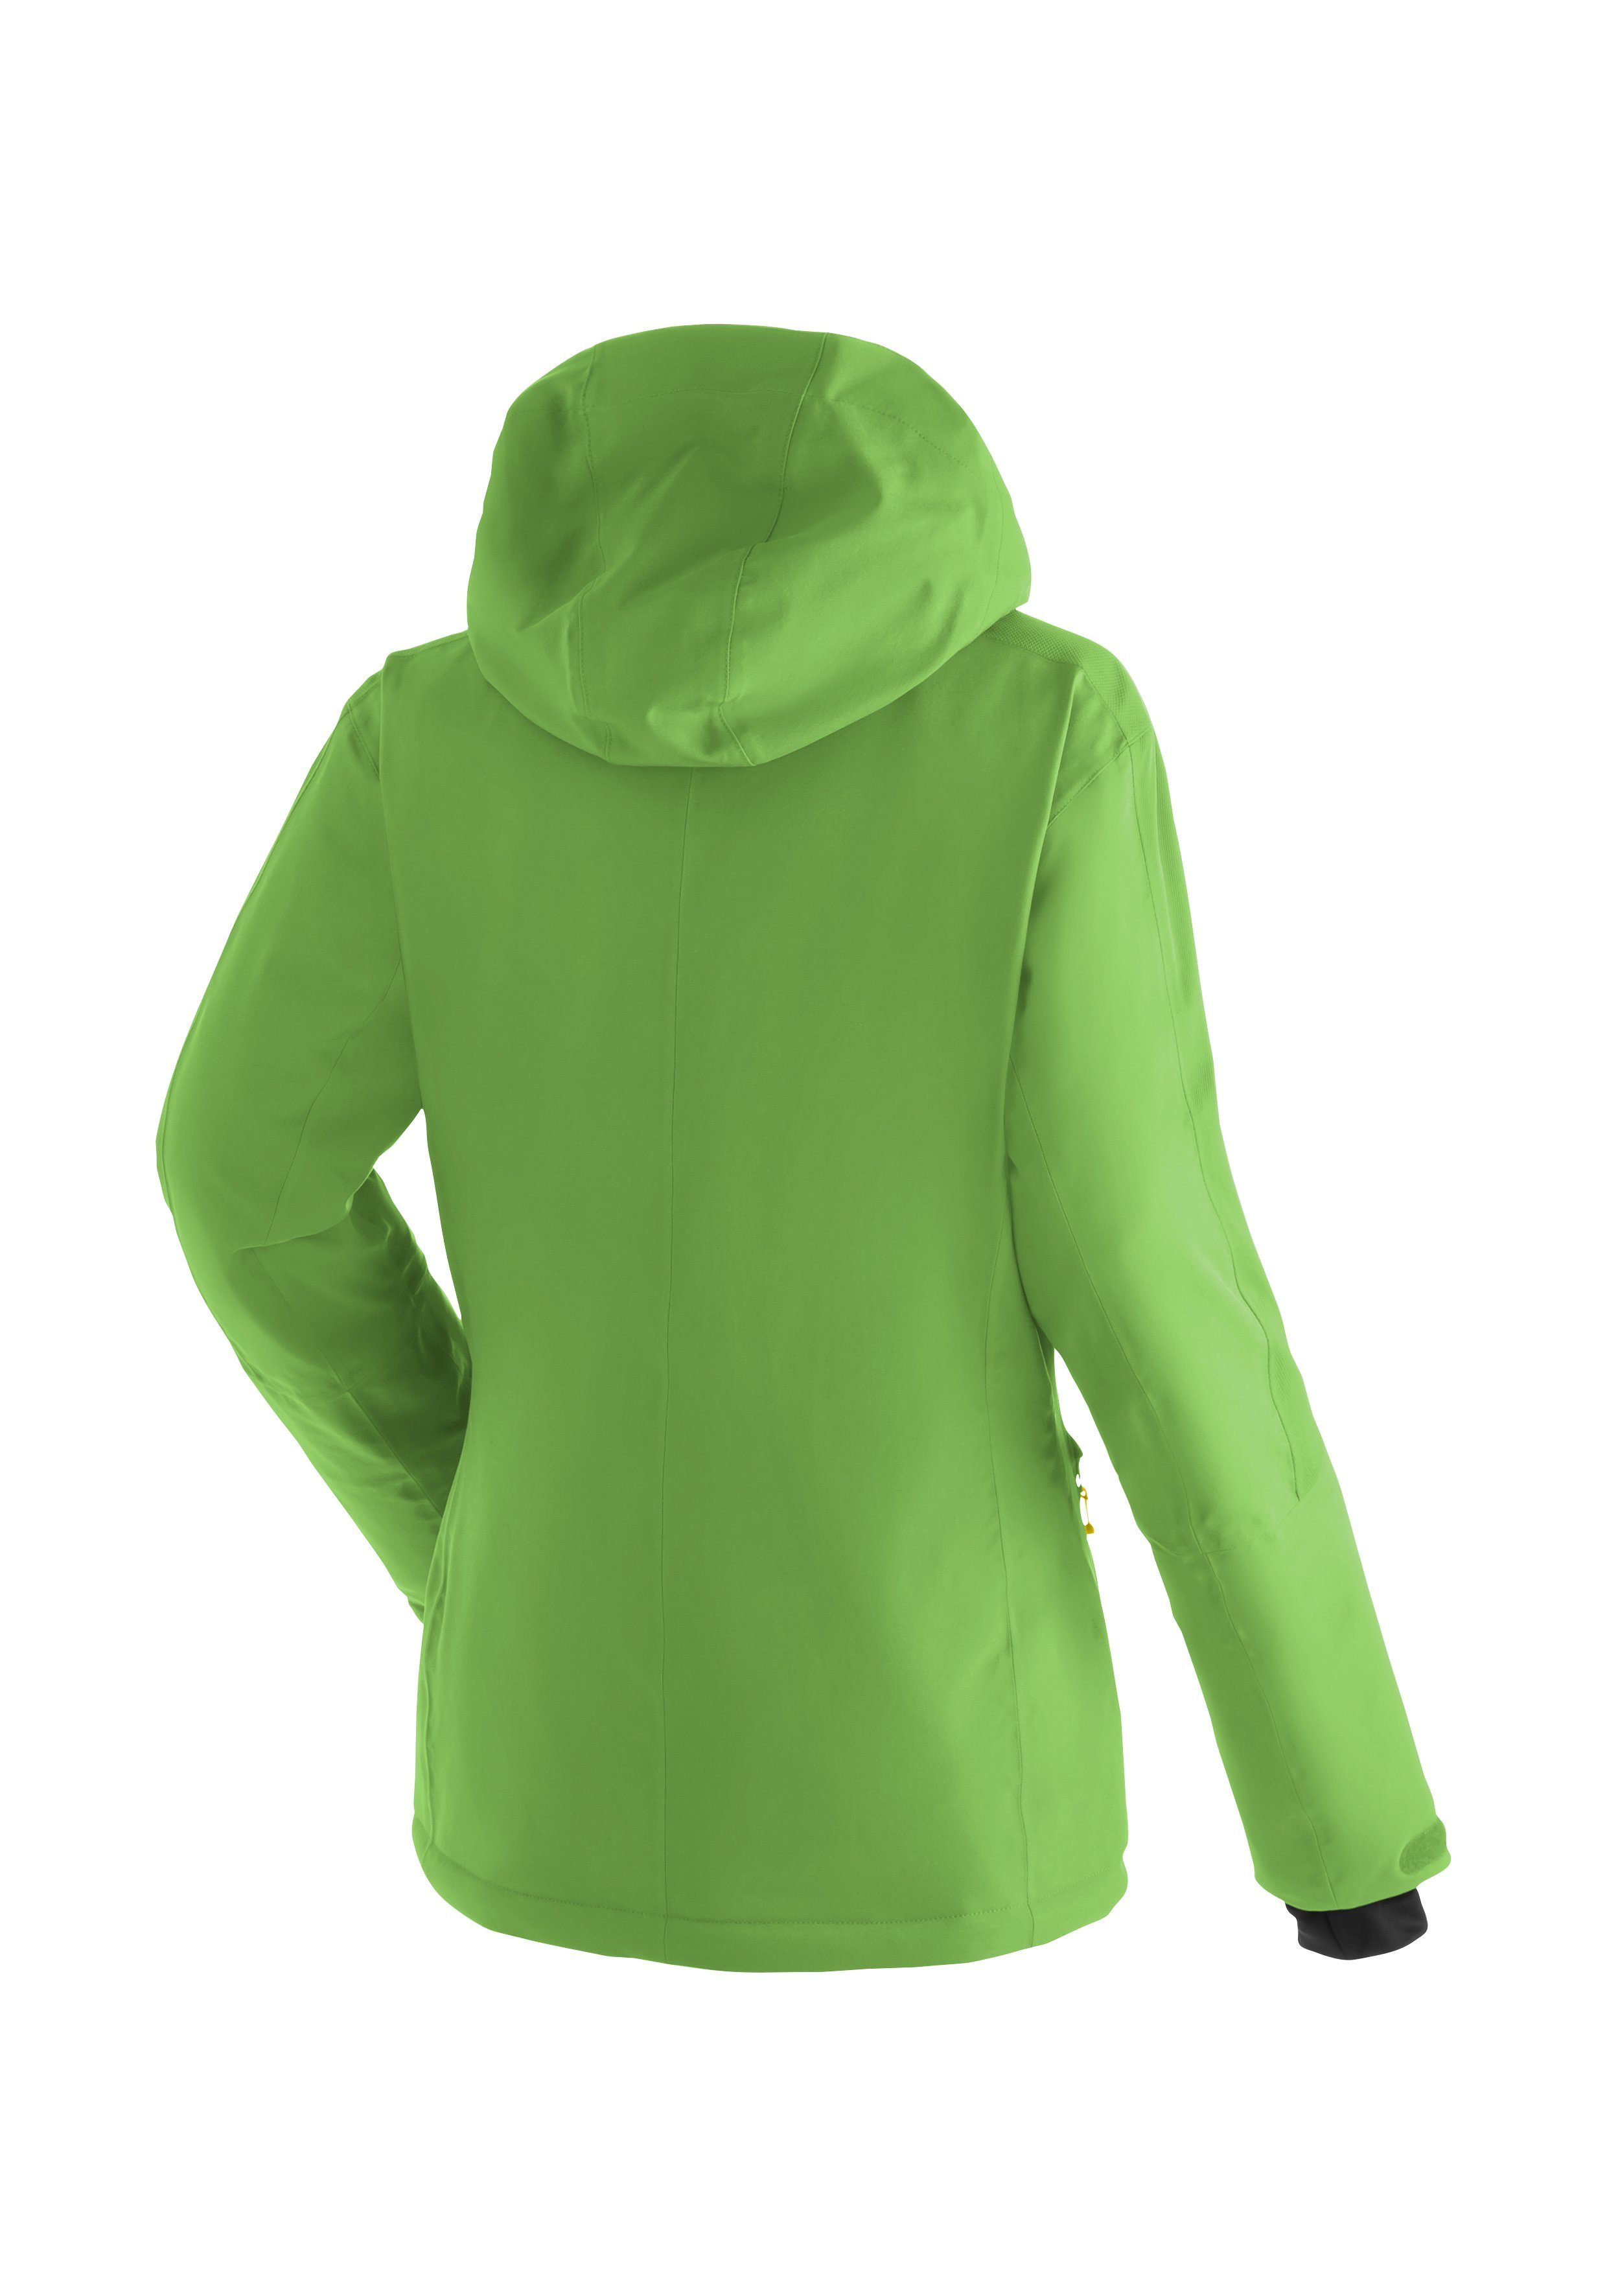 Skijacke – Sports Maier Impulse apfelgrün designte Piste Fast Modern für Skijacke perfekt Freeride W und